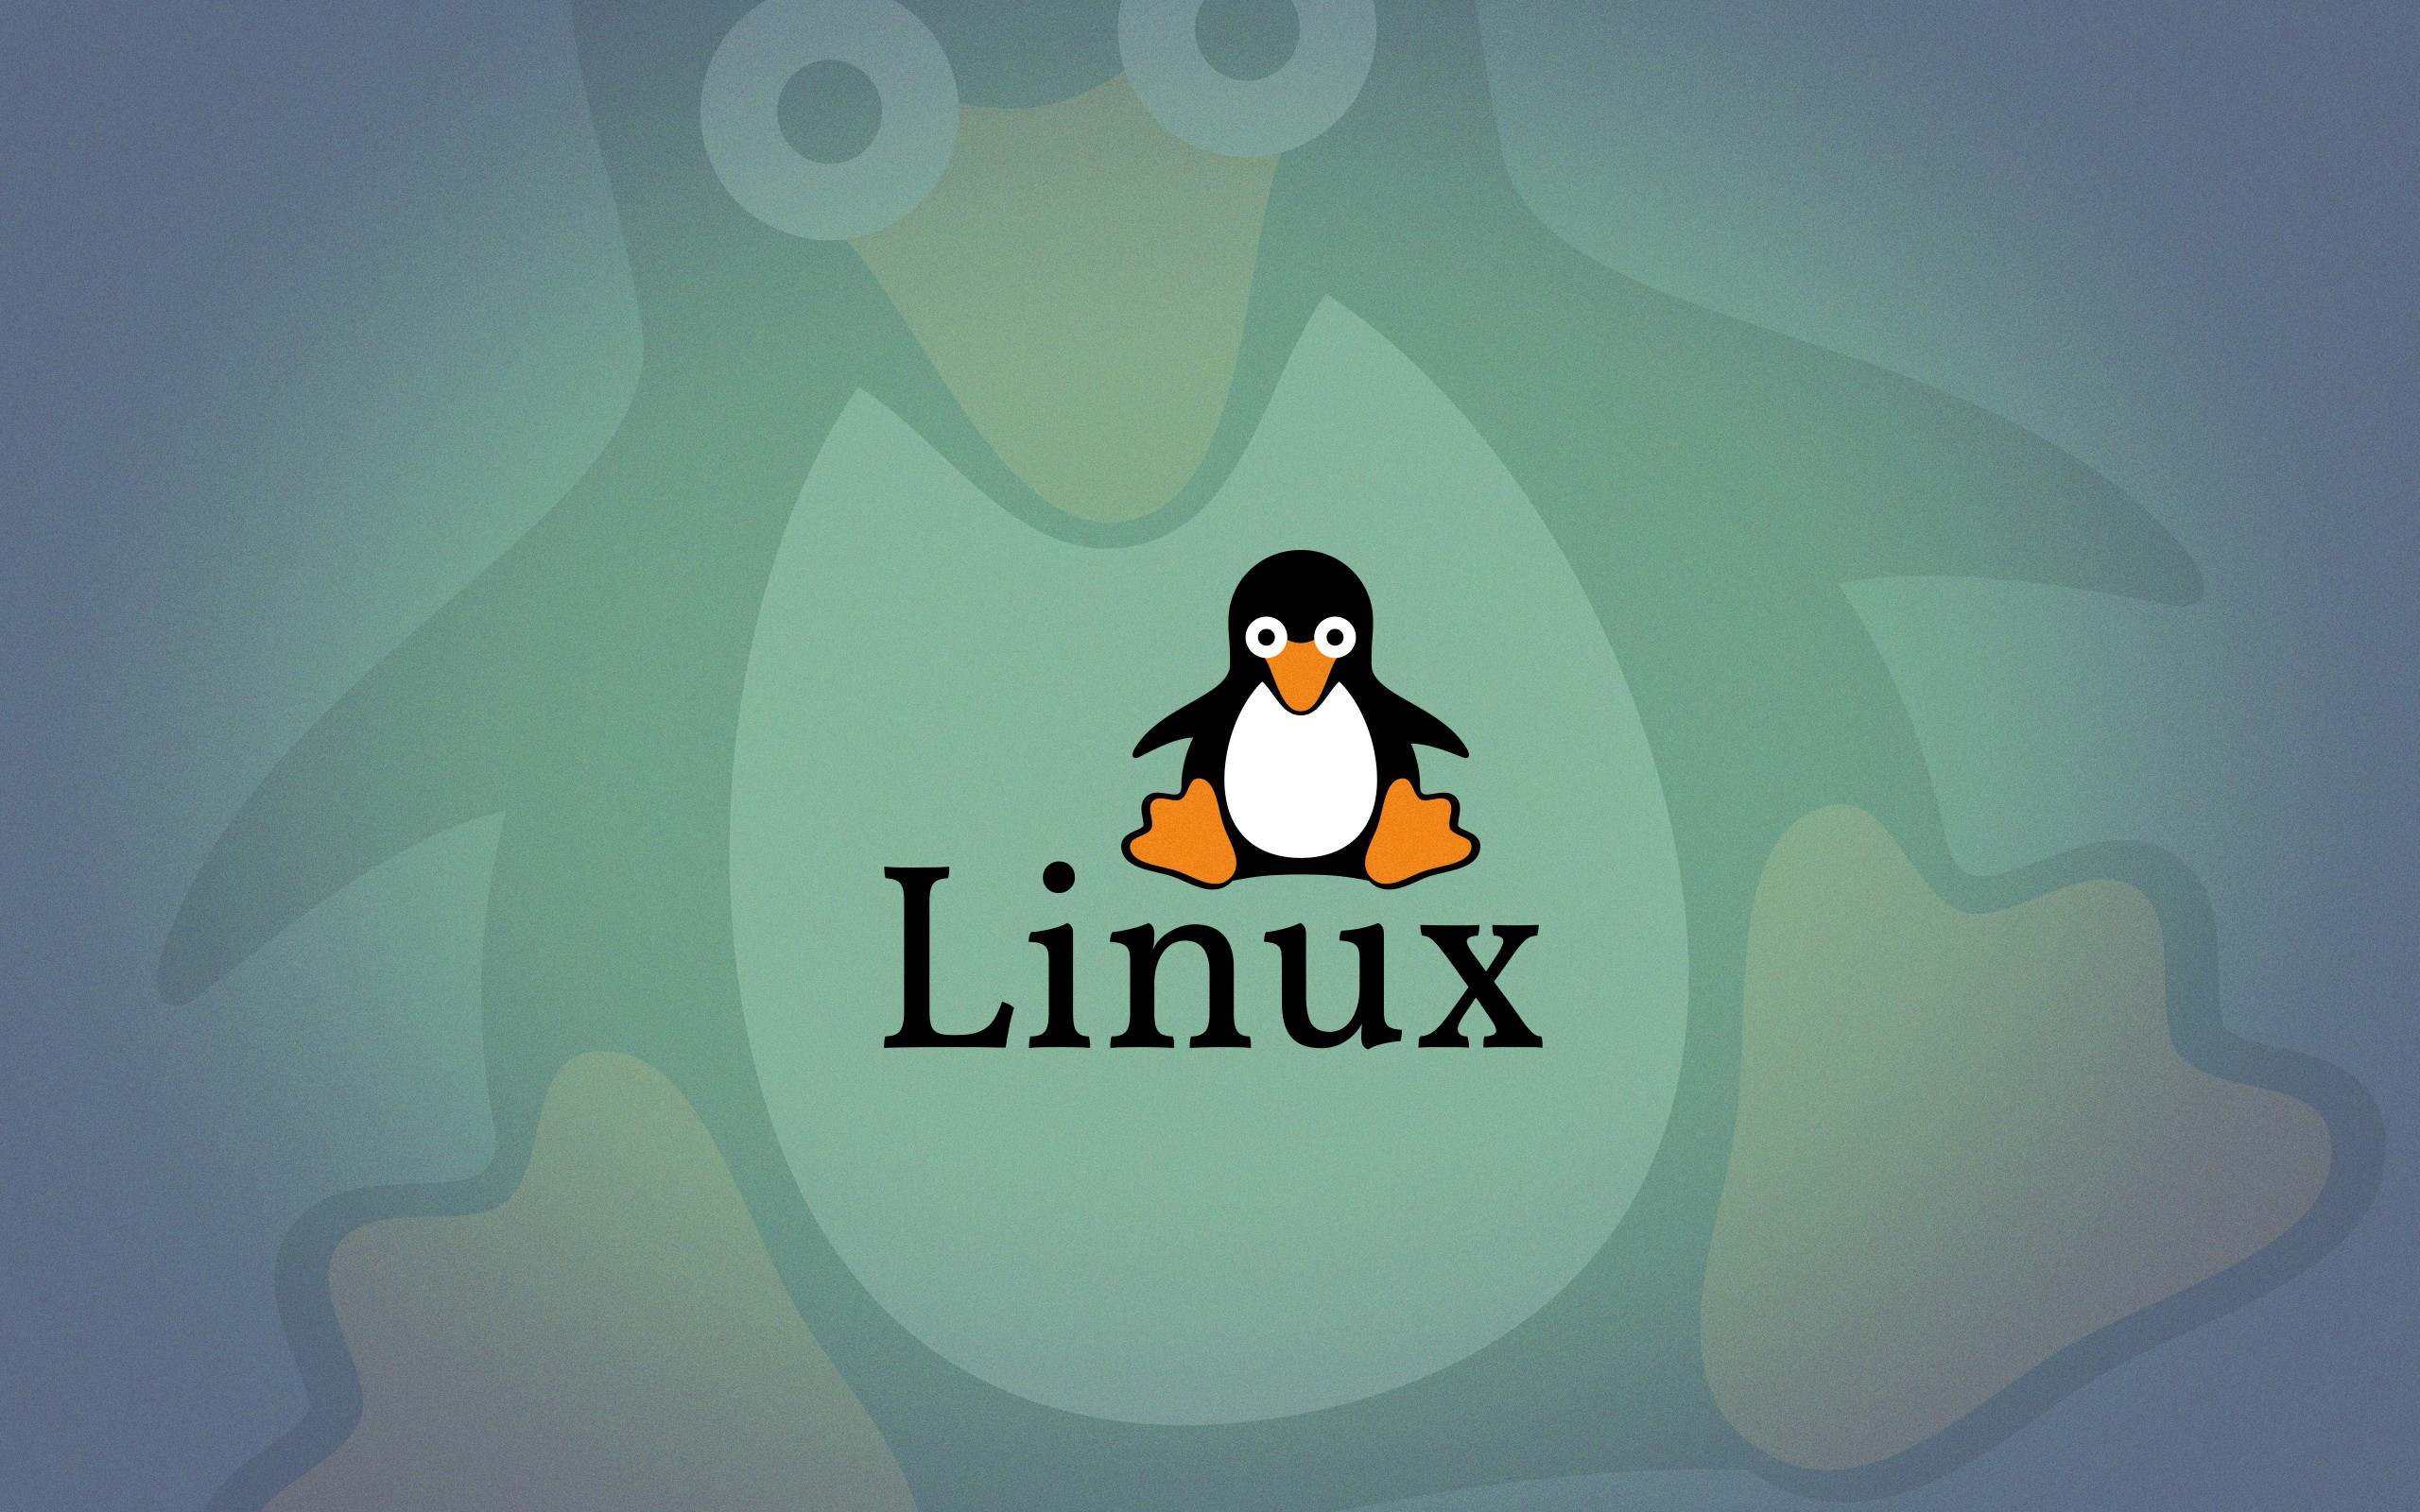 Linux 5.19 vai suportar firmware compactado Zstd